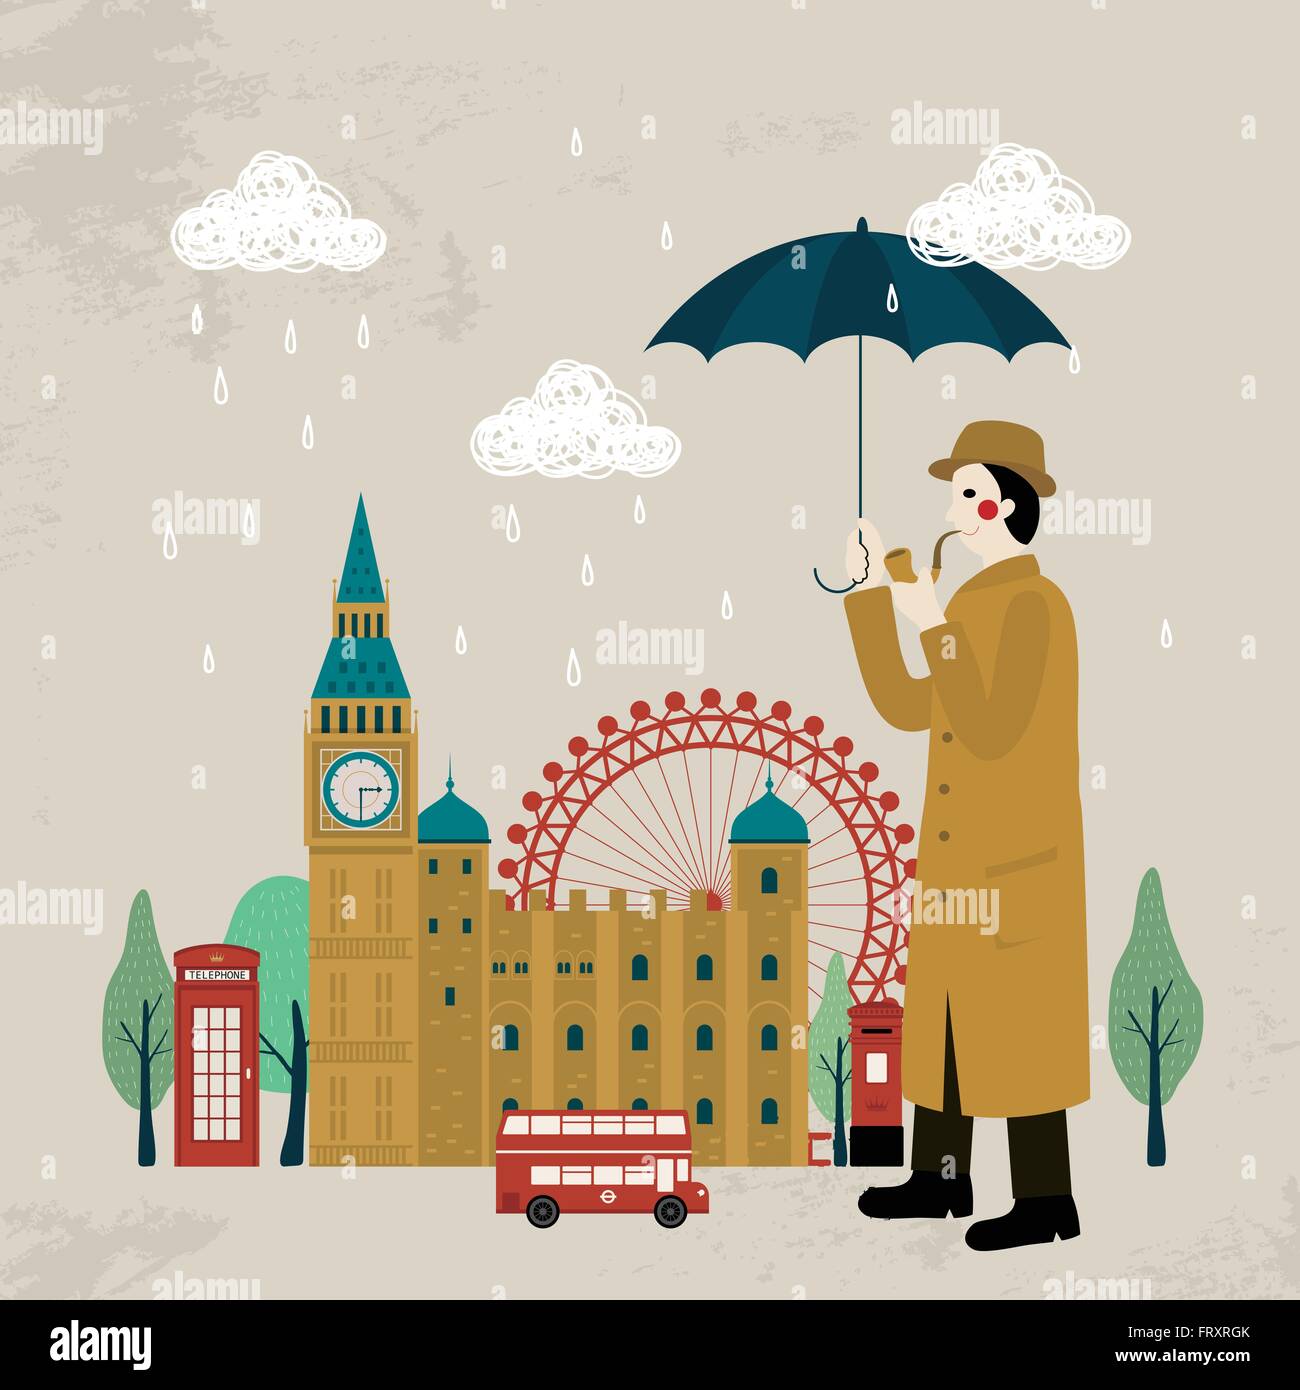 Belle conception impression Royaume-uni - le détective et attractions Illustration de Vecteur